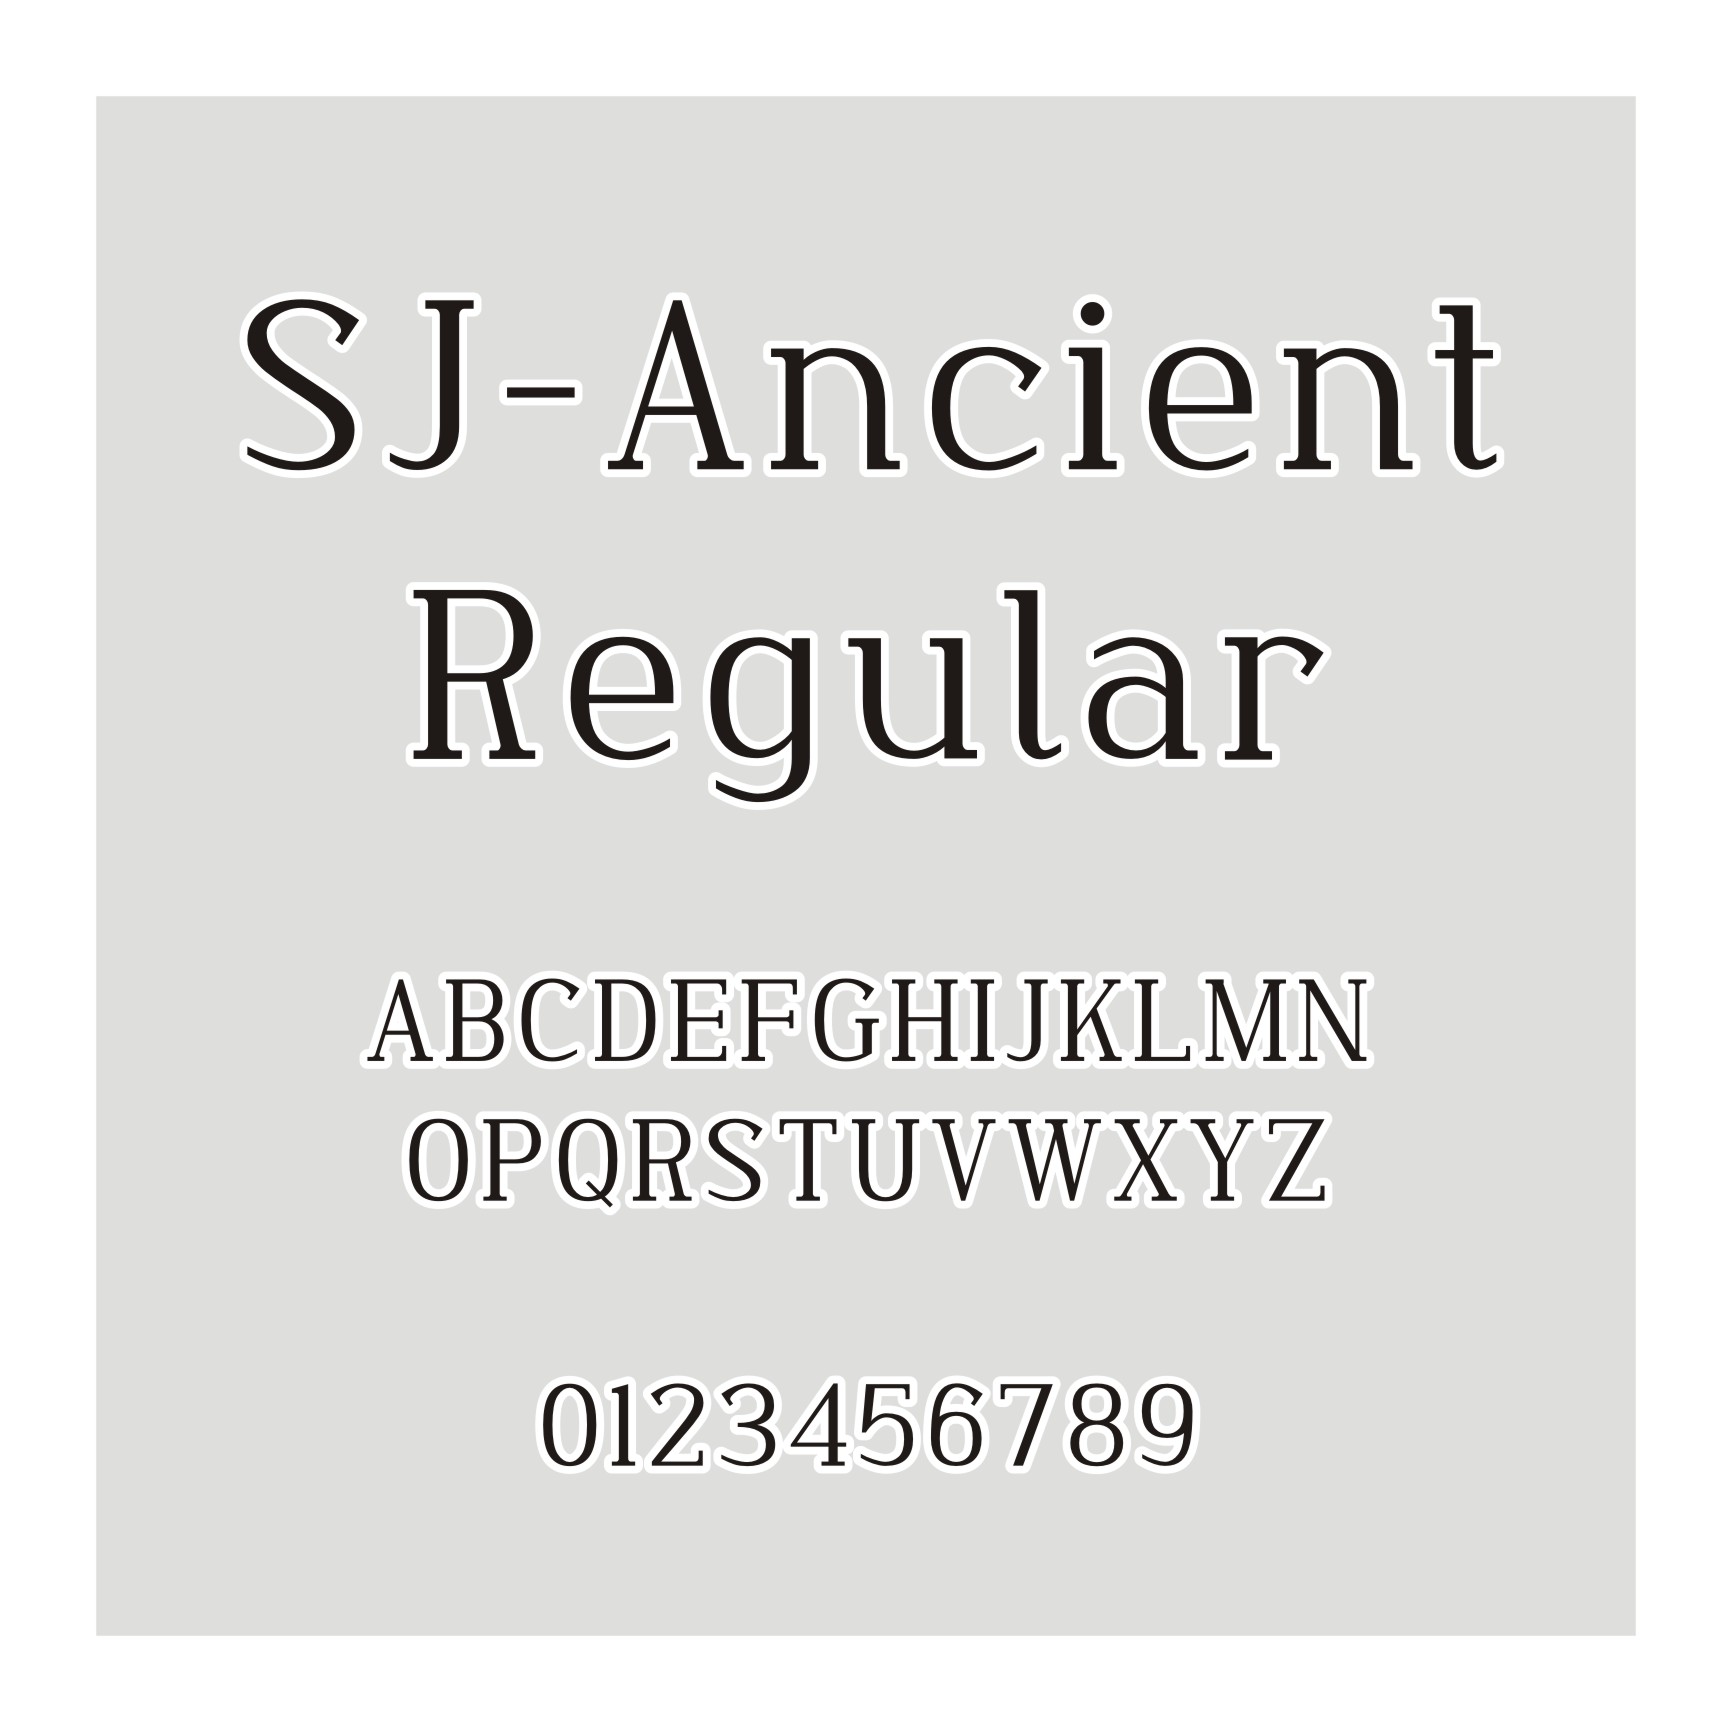  SJ-Ancient Regular